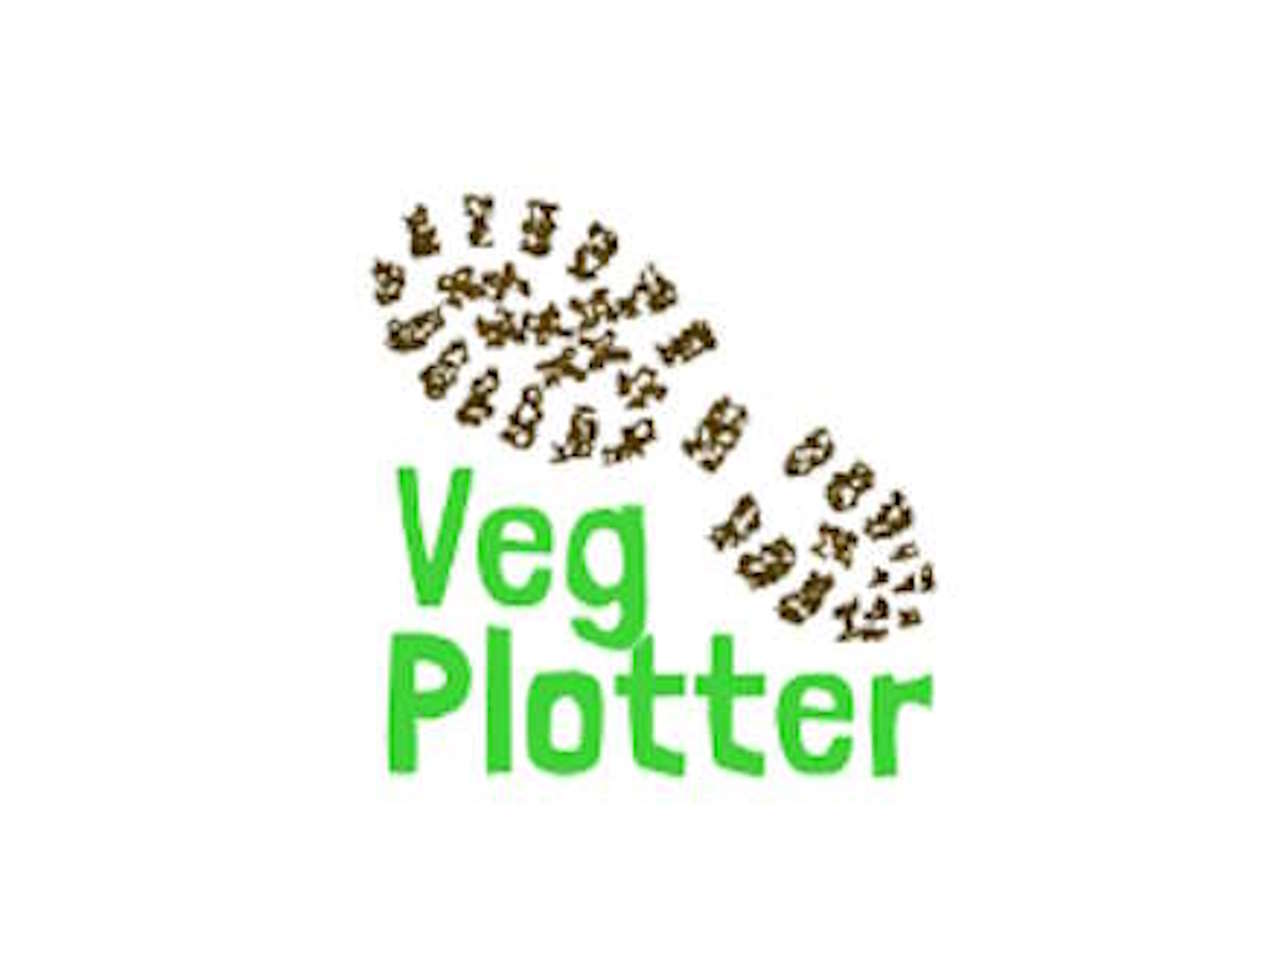 Vegplotter.com's logo.